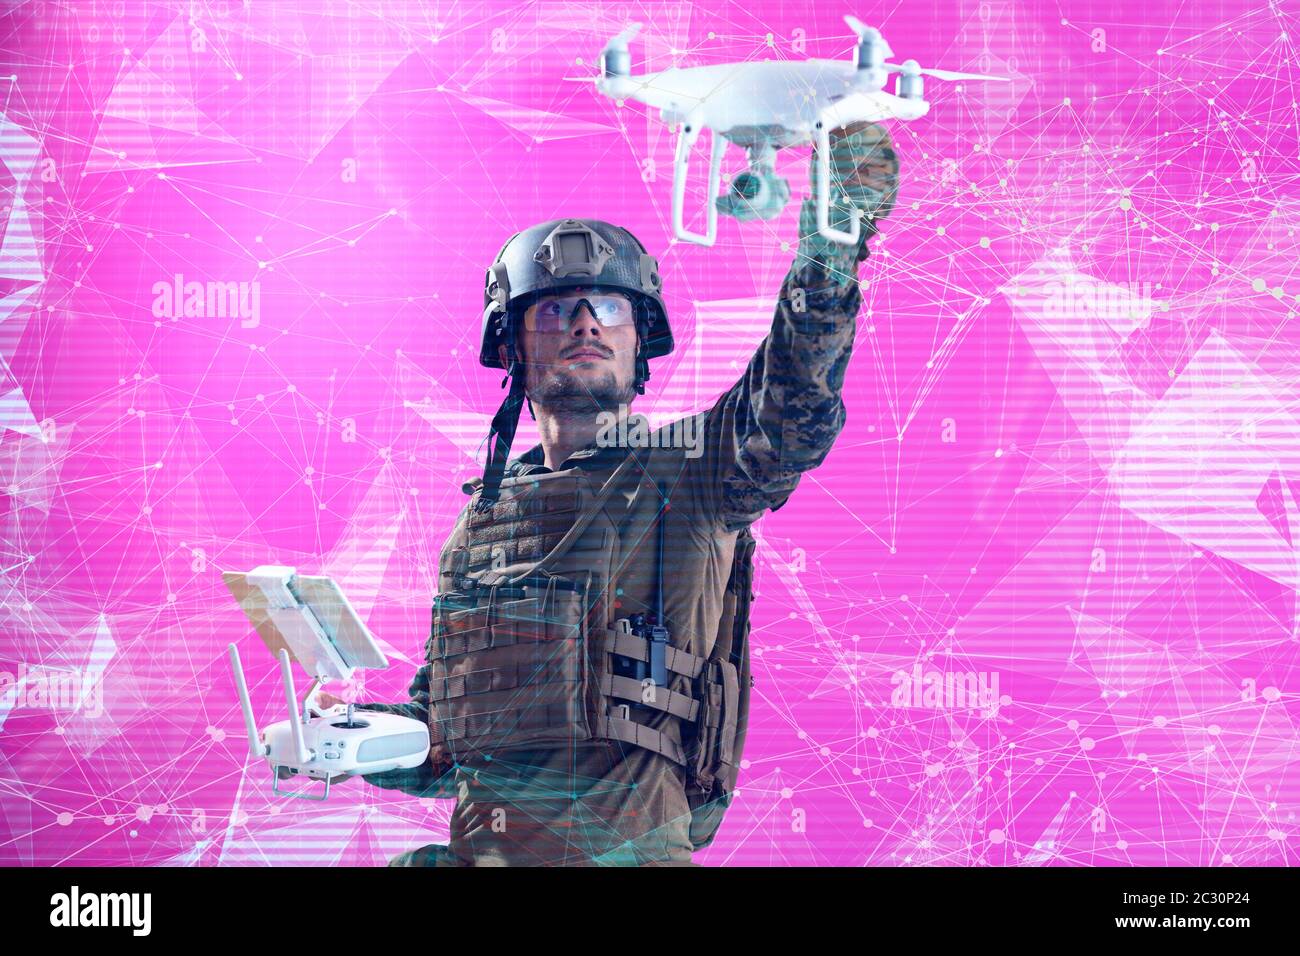 soldier drone technician glitch Stock Photo